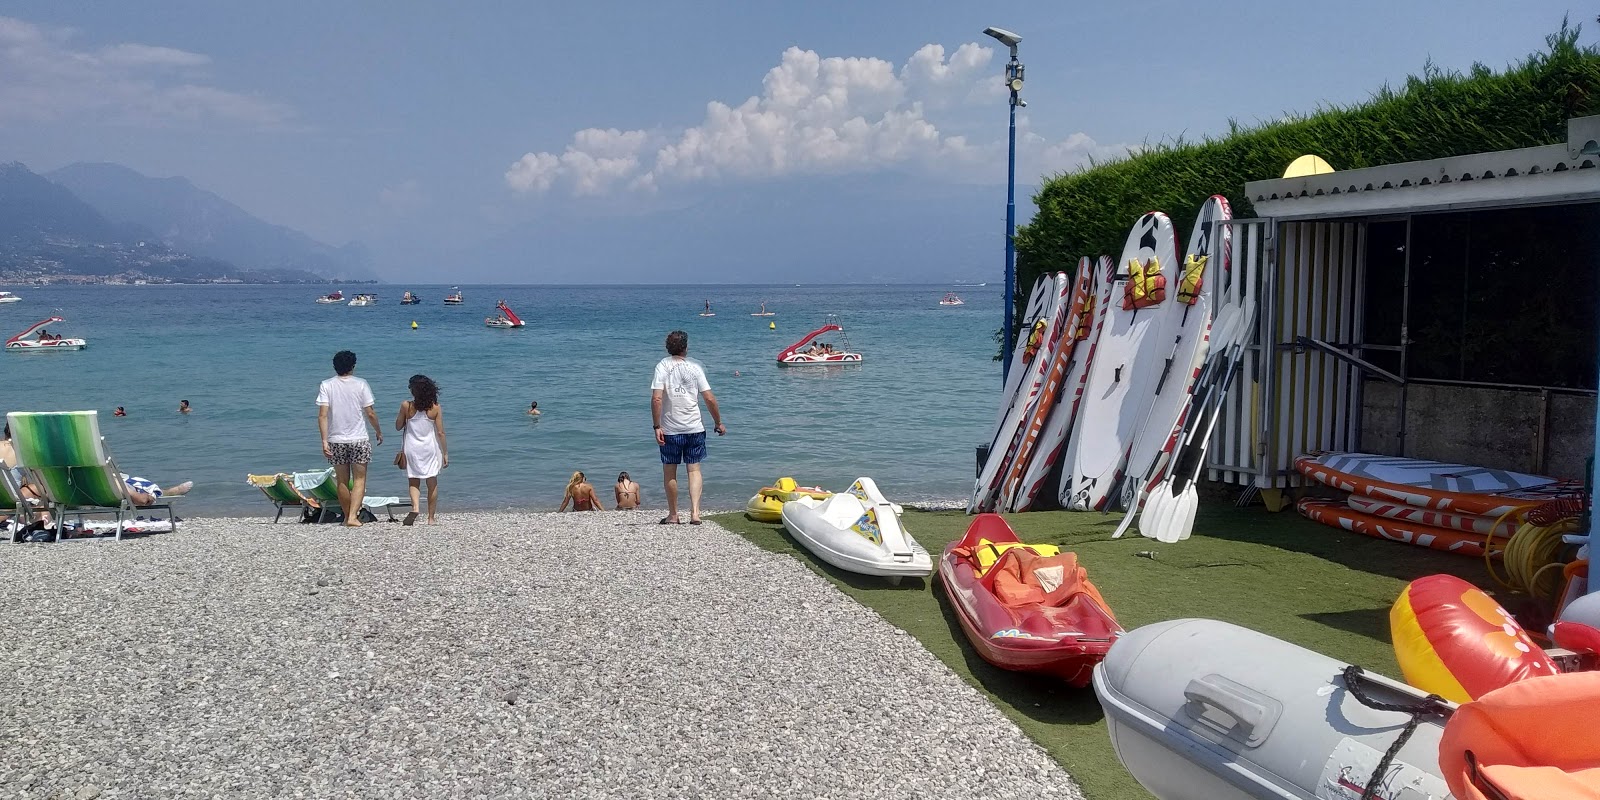 Foto af Spiaggia Baia del Vento - populært sted blandt afslapningskendere